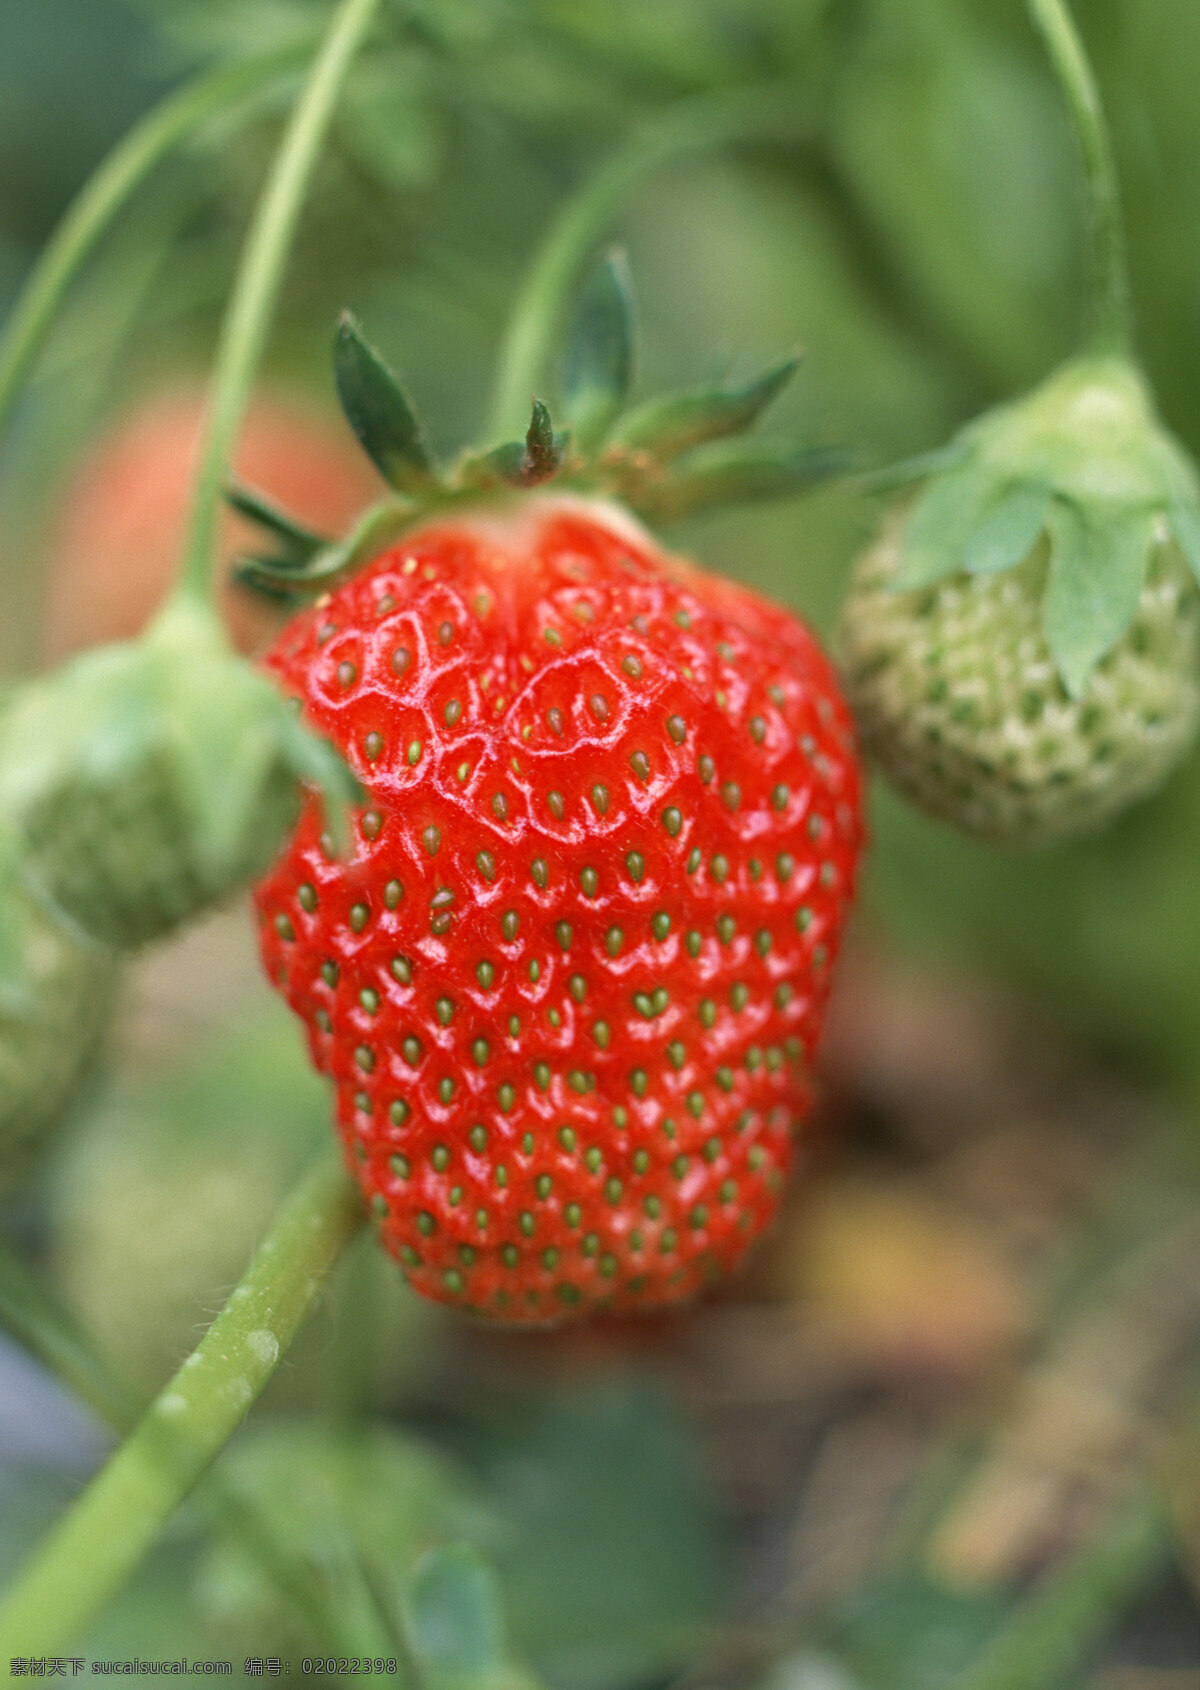 草莓高清摄影 草莓 草莓园 水果 果子 生物世界 摄影图片 水果图片 水果素材 绿色 健康水果 新鲜水果 水果蔬菜 餐饮美食 红色